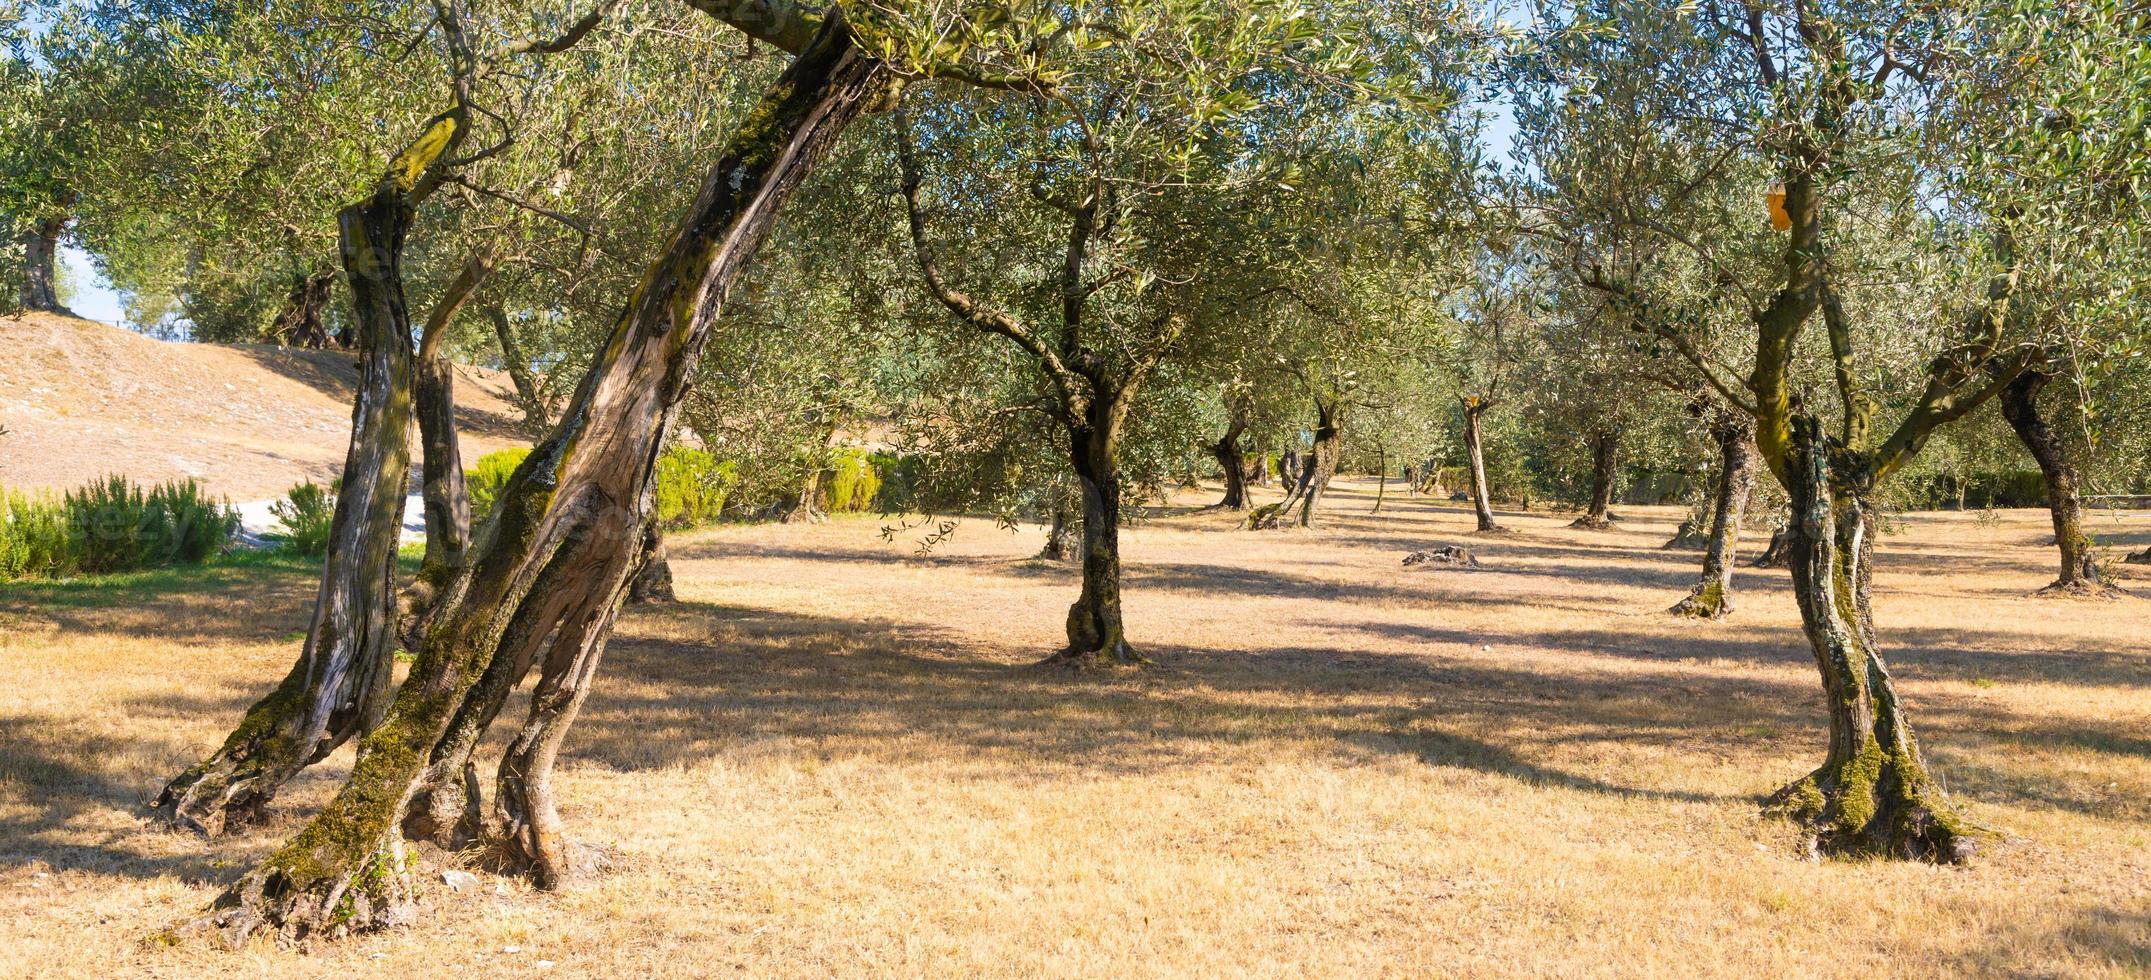 cultivo de olivos en italia. plantación orgánica al aire libre en un paisaje rural. foto